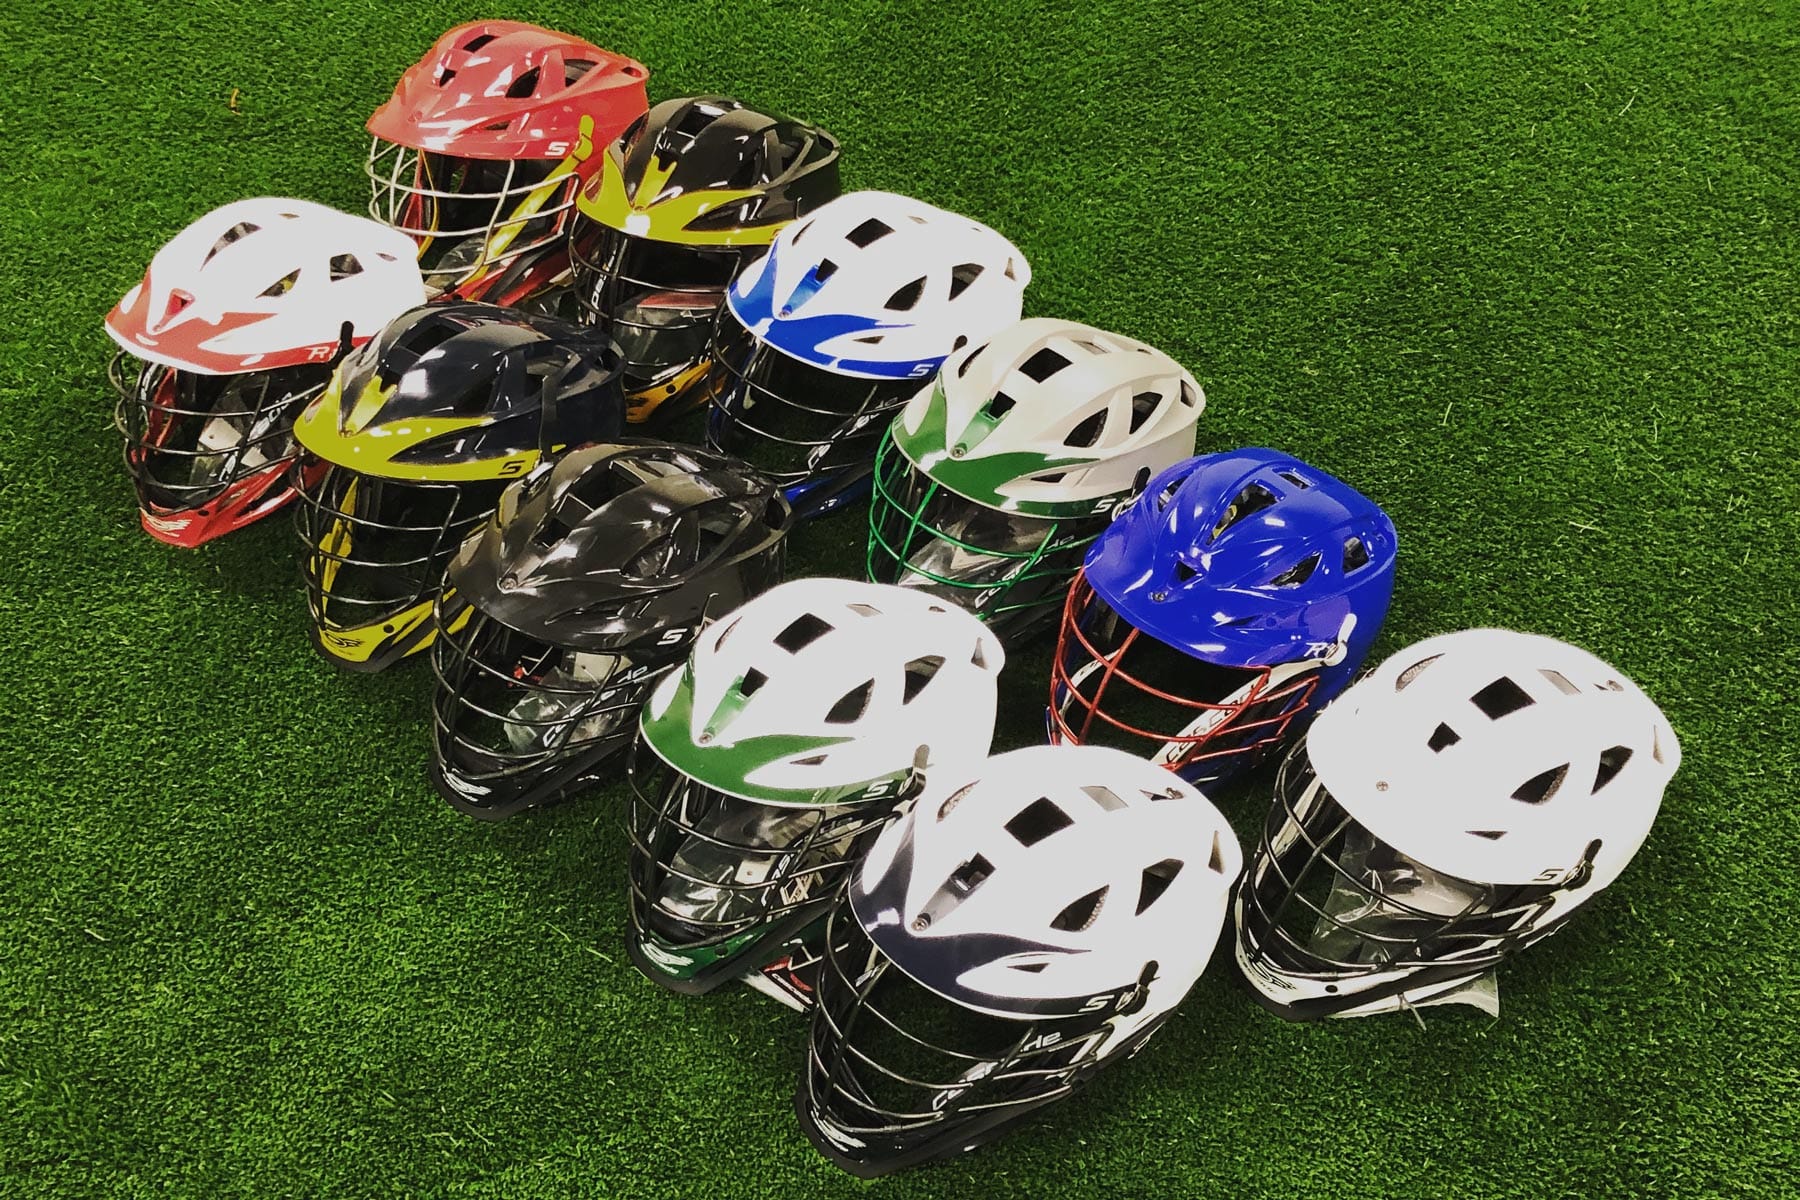 Team helmets sales from Lacrosse Fanatic